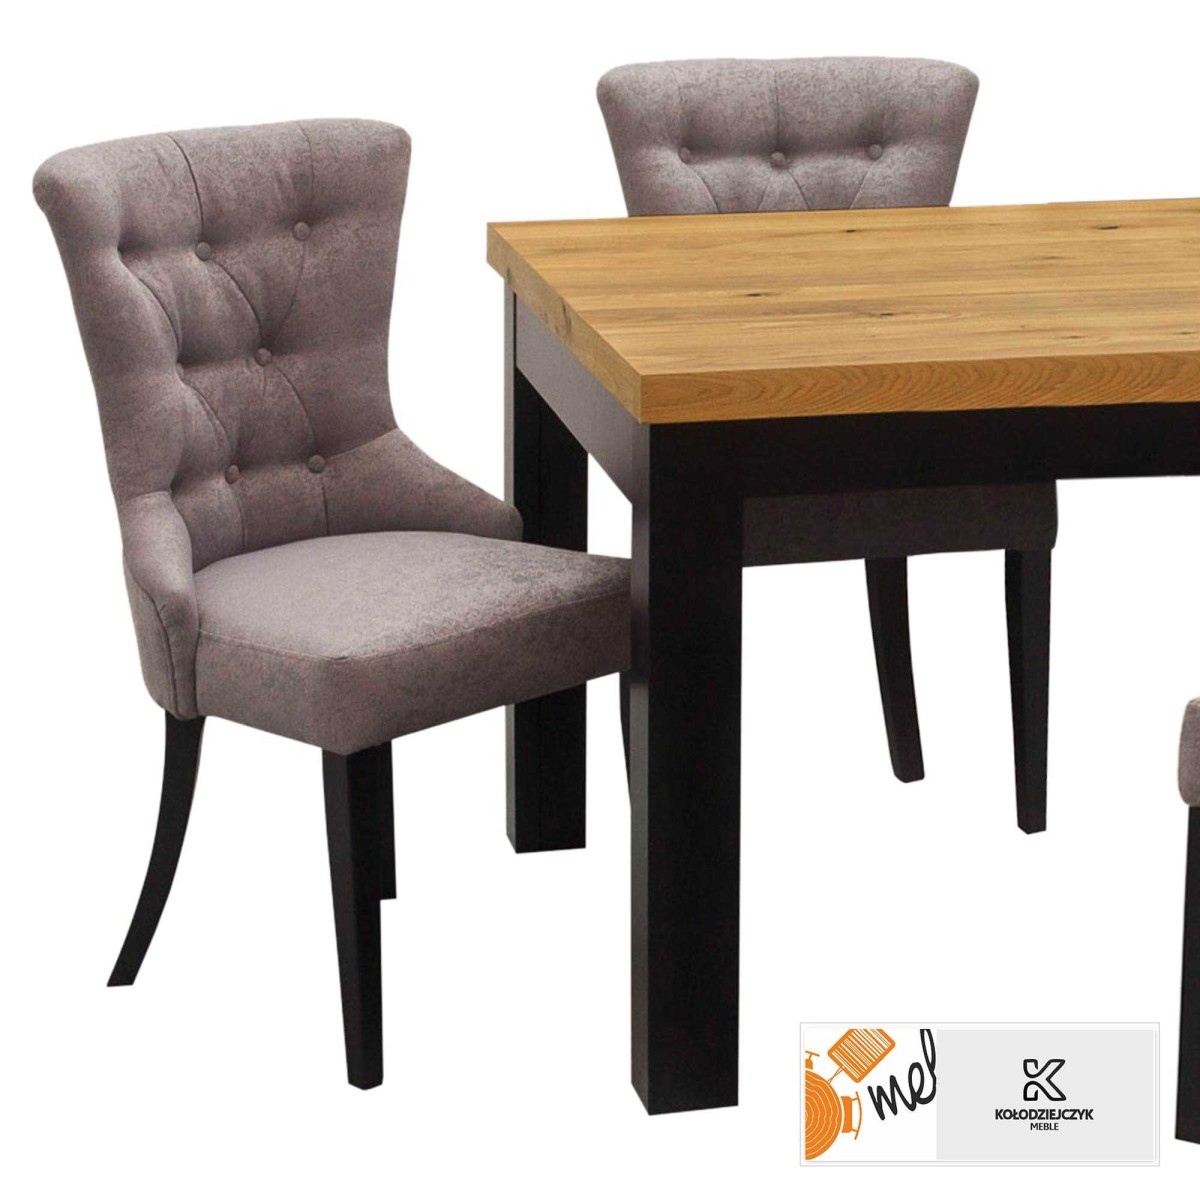 Kwadratowy stół rozkładany Z35K z krzesłami na czarnych nogach